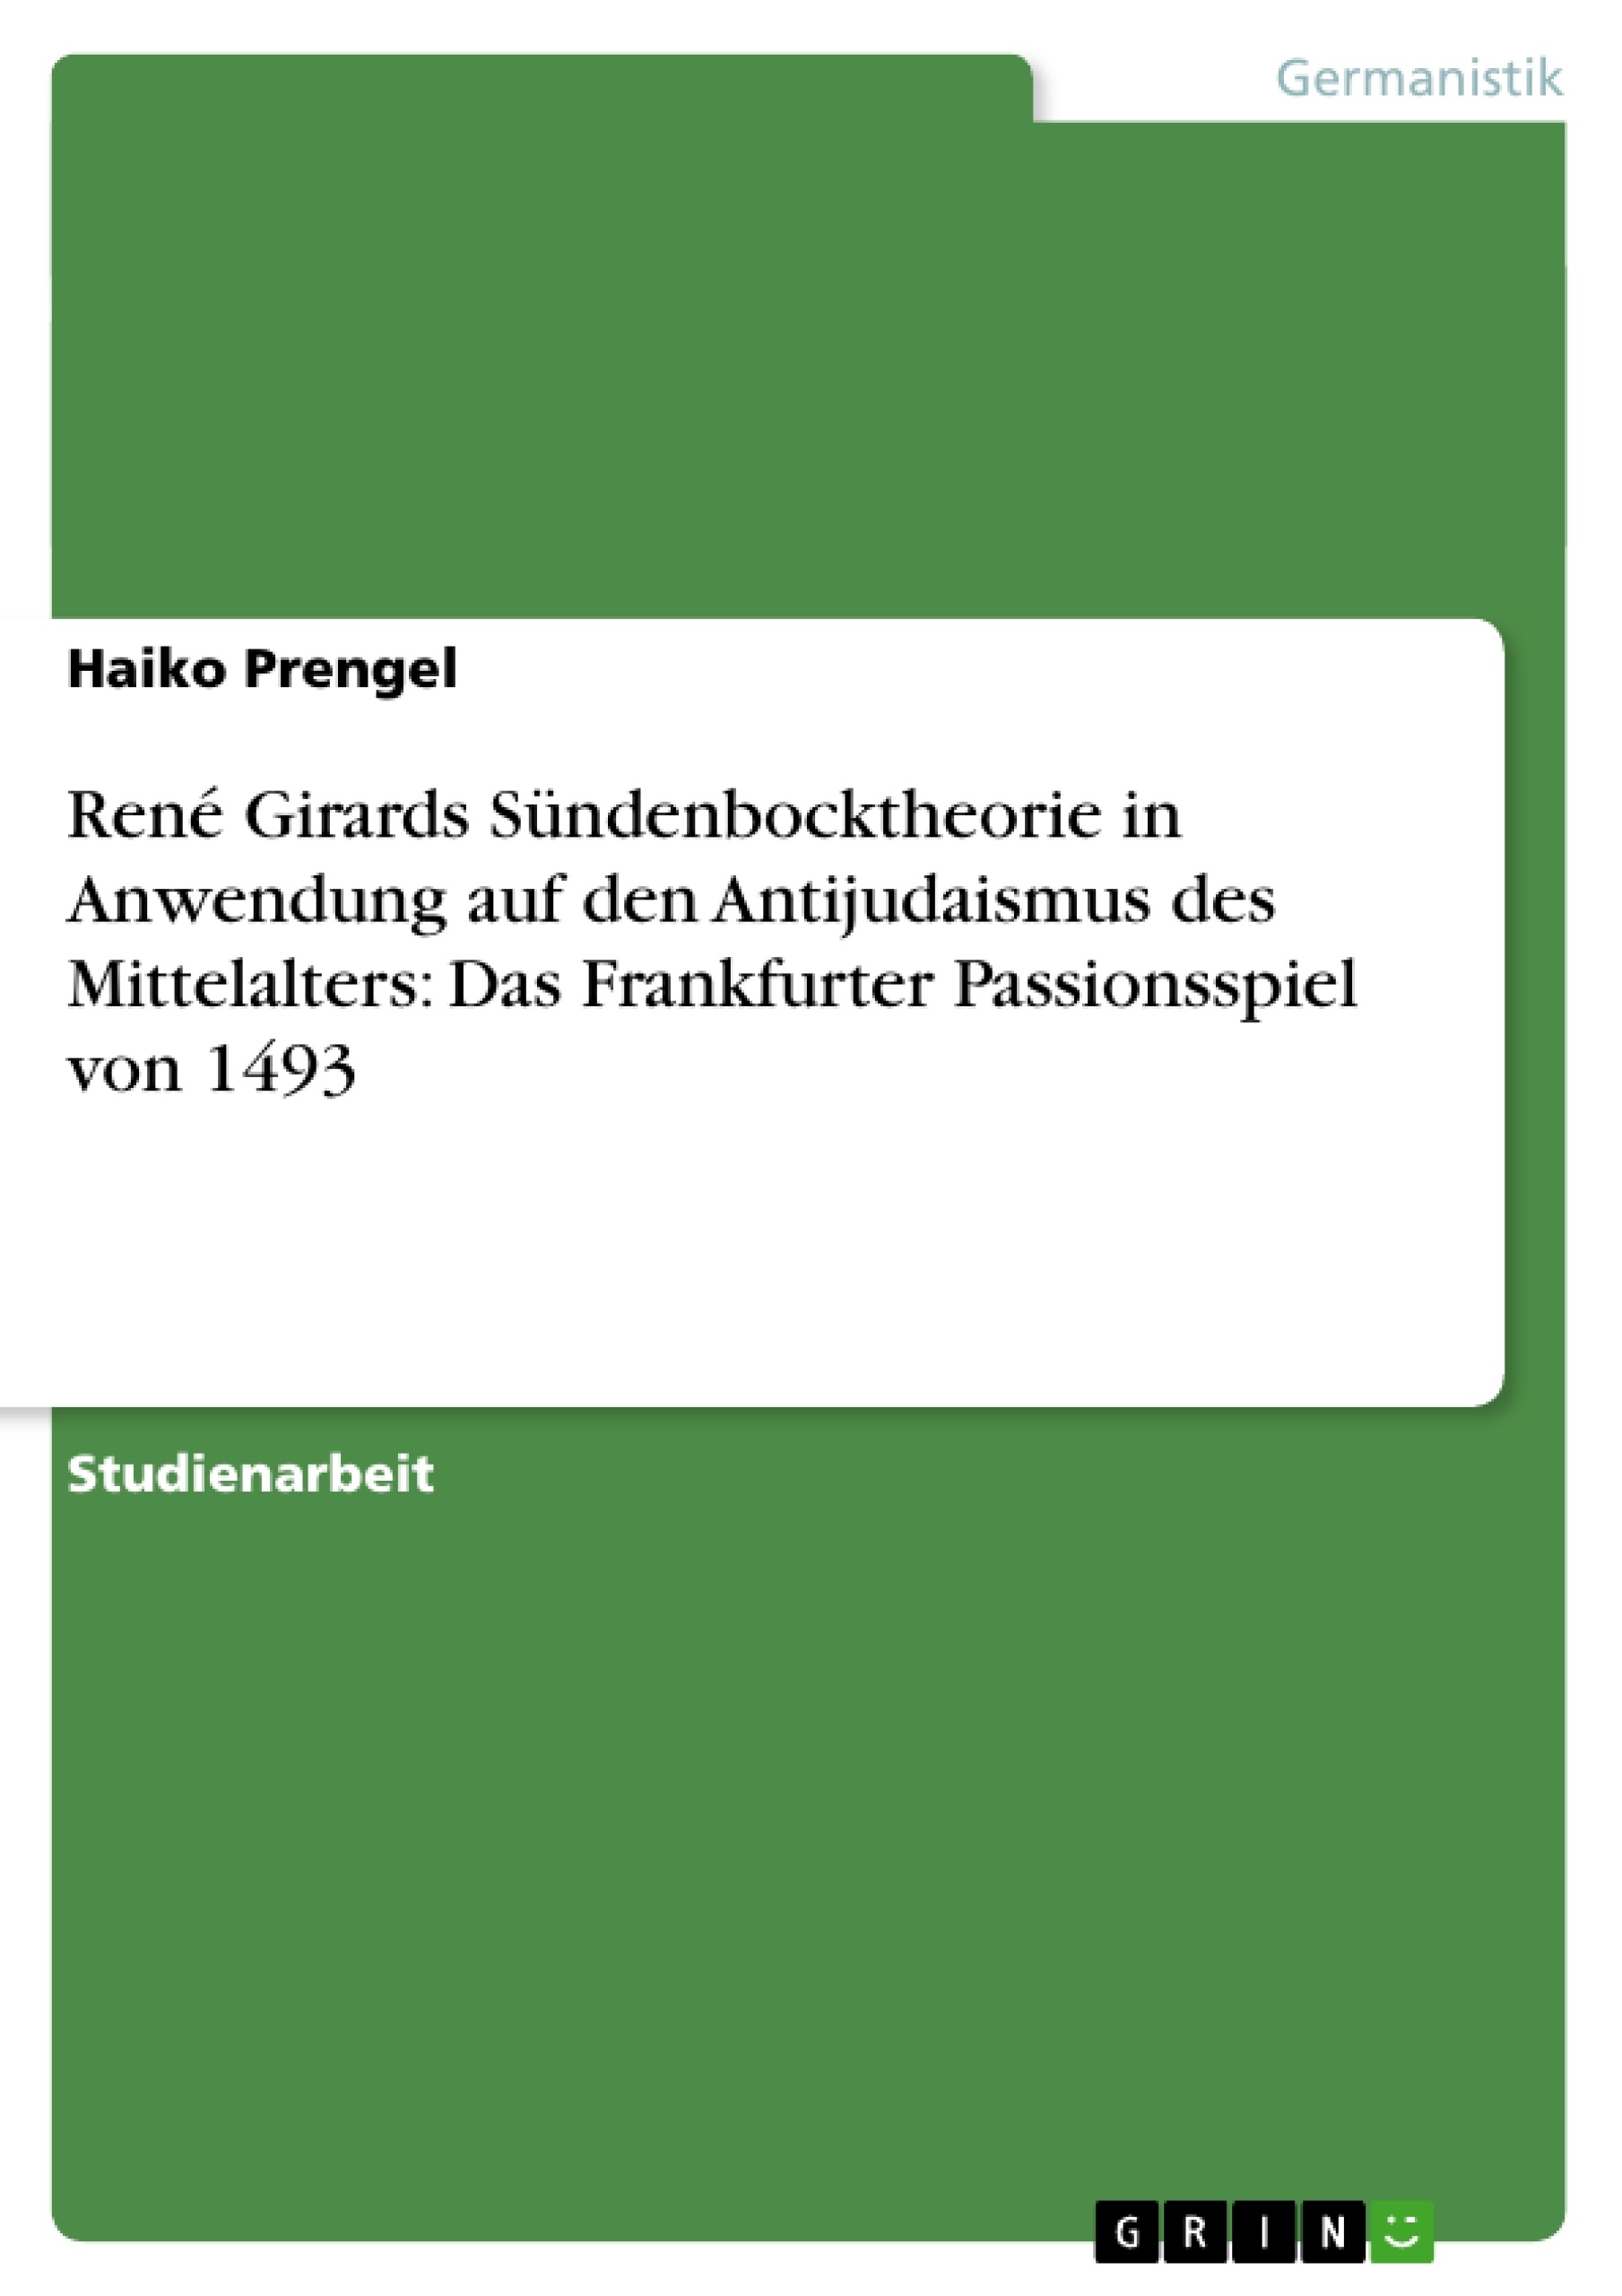 Title: René Girards Sündenbocktheorie in Anwendung auf den Antijudaismus des Mittelalters: Das Frankfurter Passionsspiel von 1493